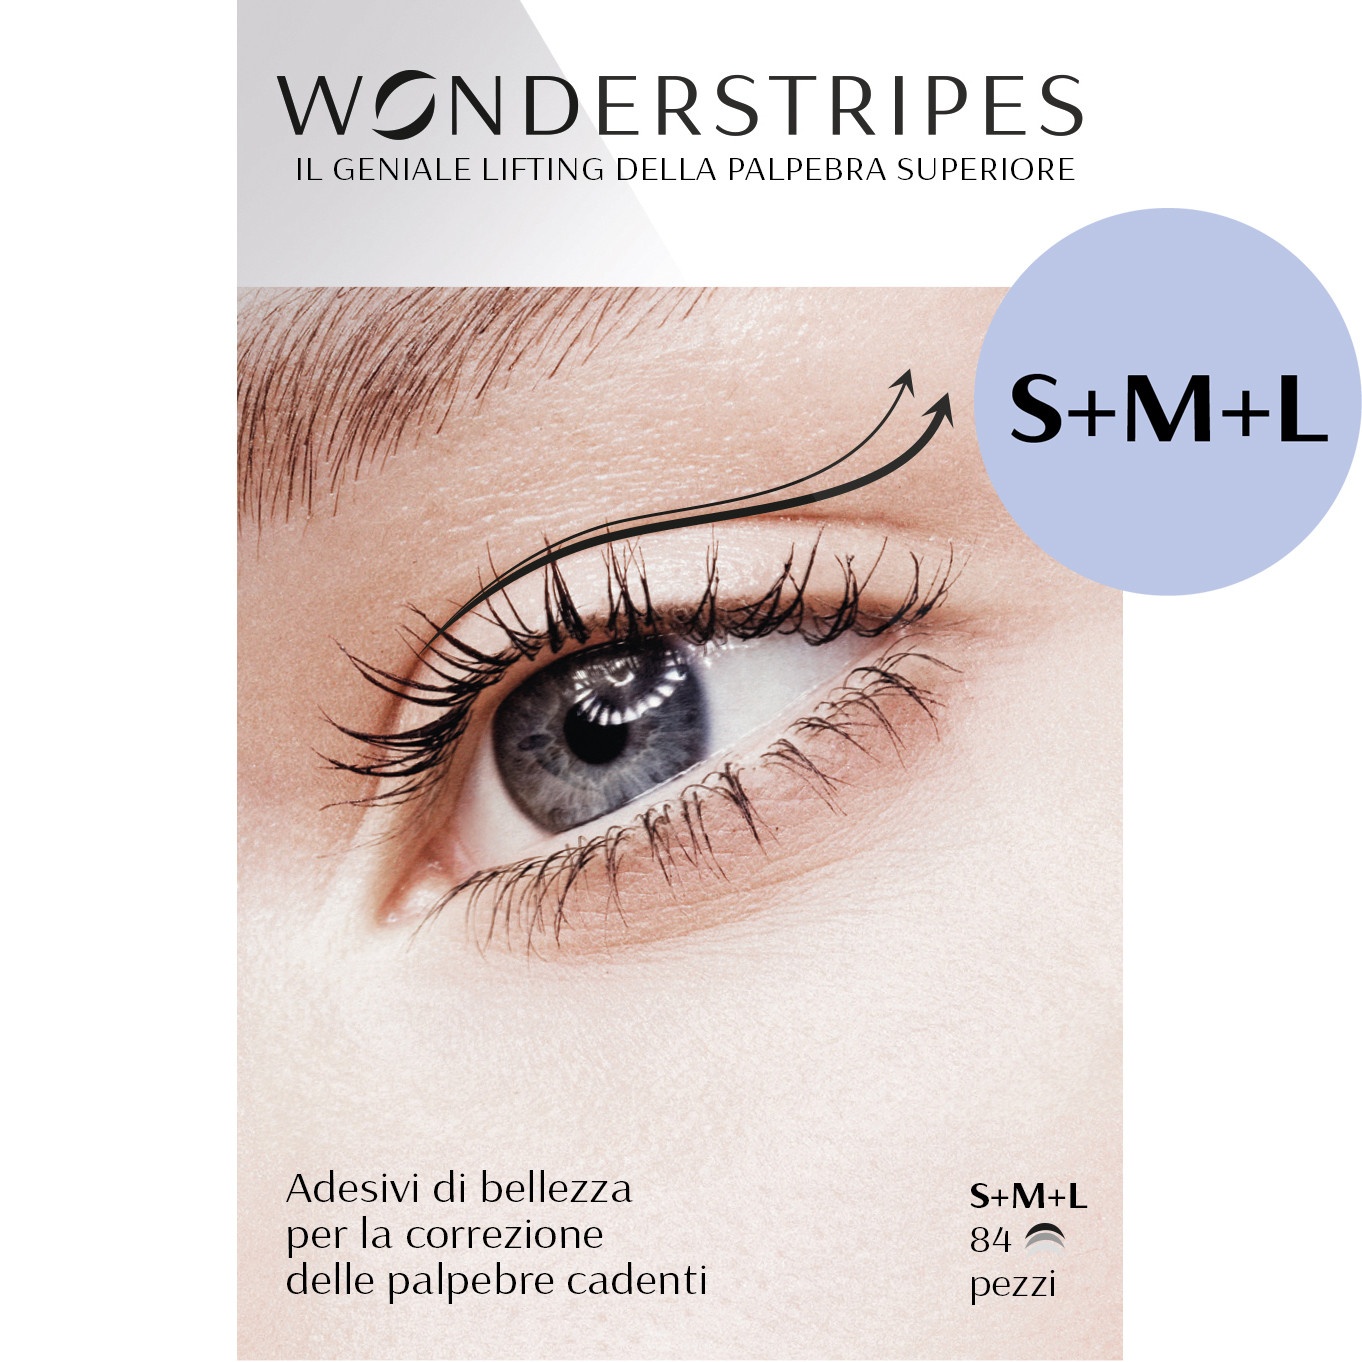 WONDERSTRIPES_Vorderseite_web_S_M_L (1)